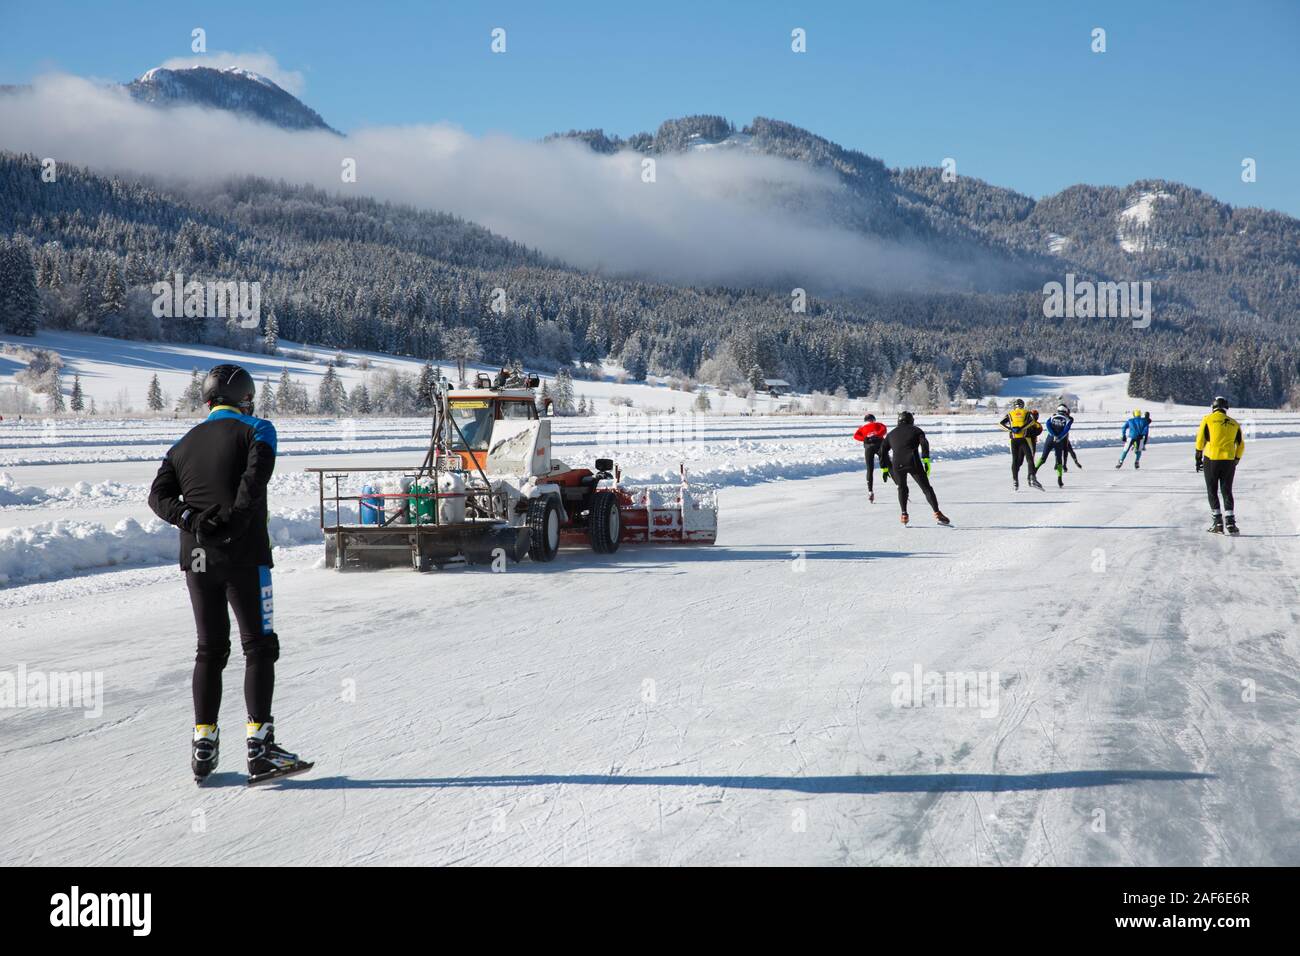 Los turistas disfrutar del patinaje sobre hielo en el lago congelado. Para la preparación de hielo a patinar sobre hielo con la nieve, más clara lago Weissensee, Carintia, Alpes, Austria Foto de stock